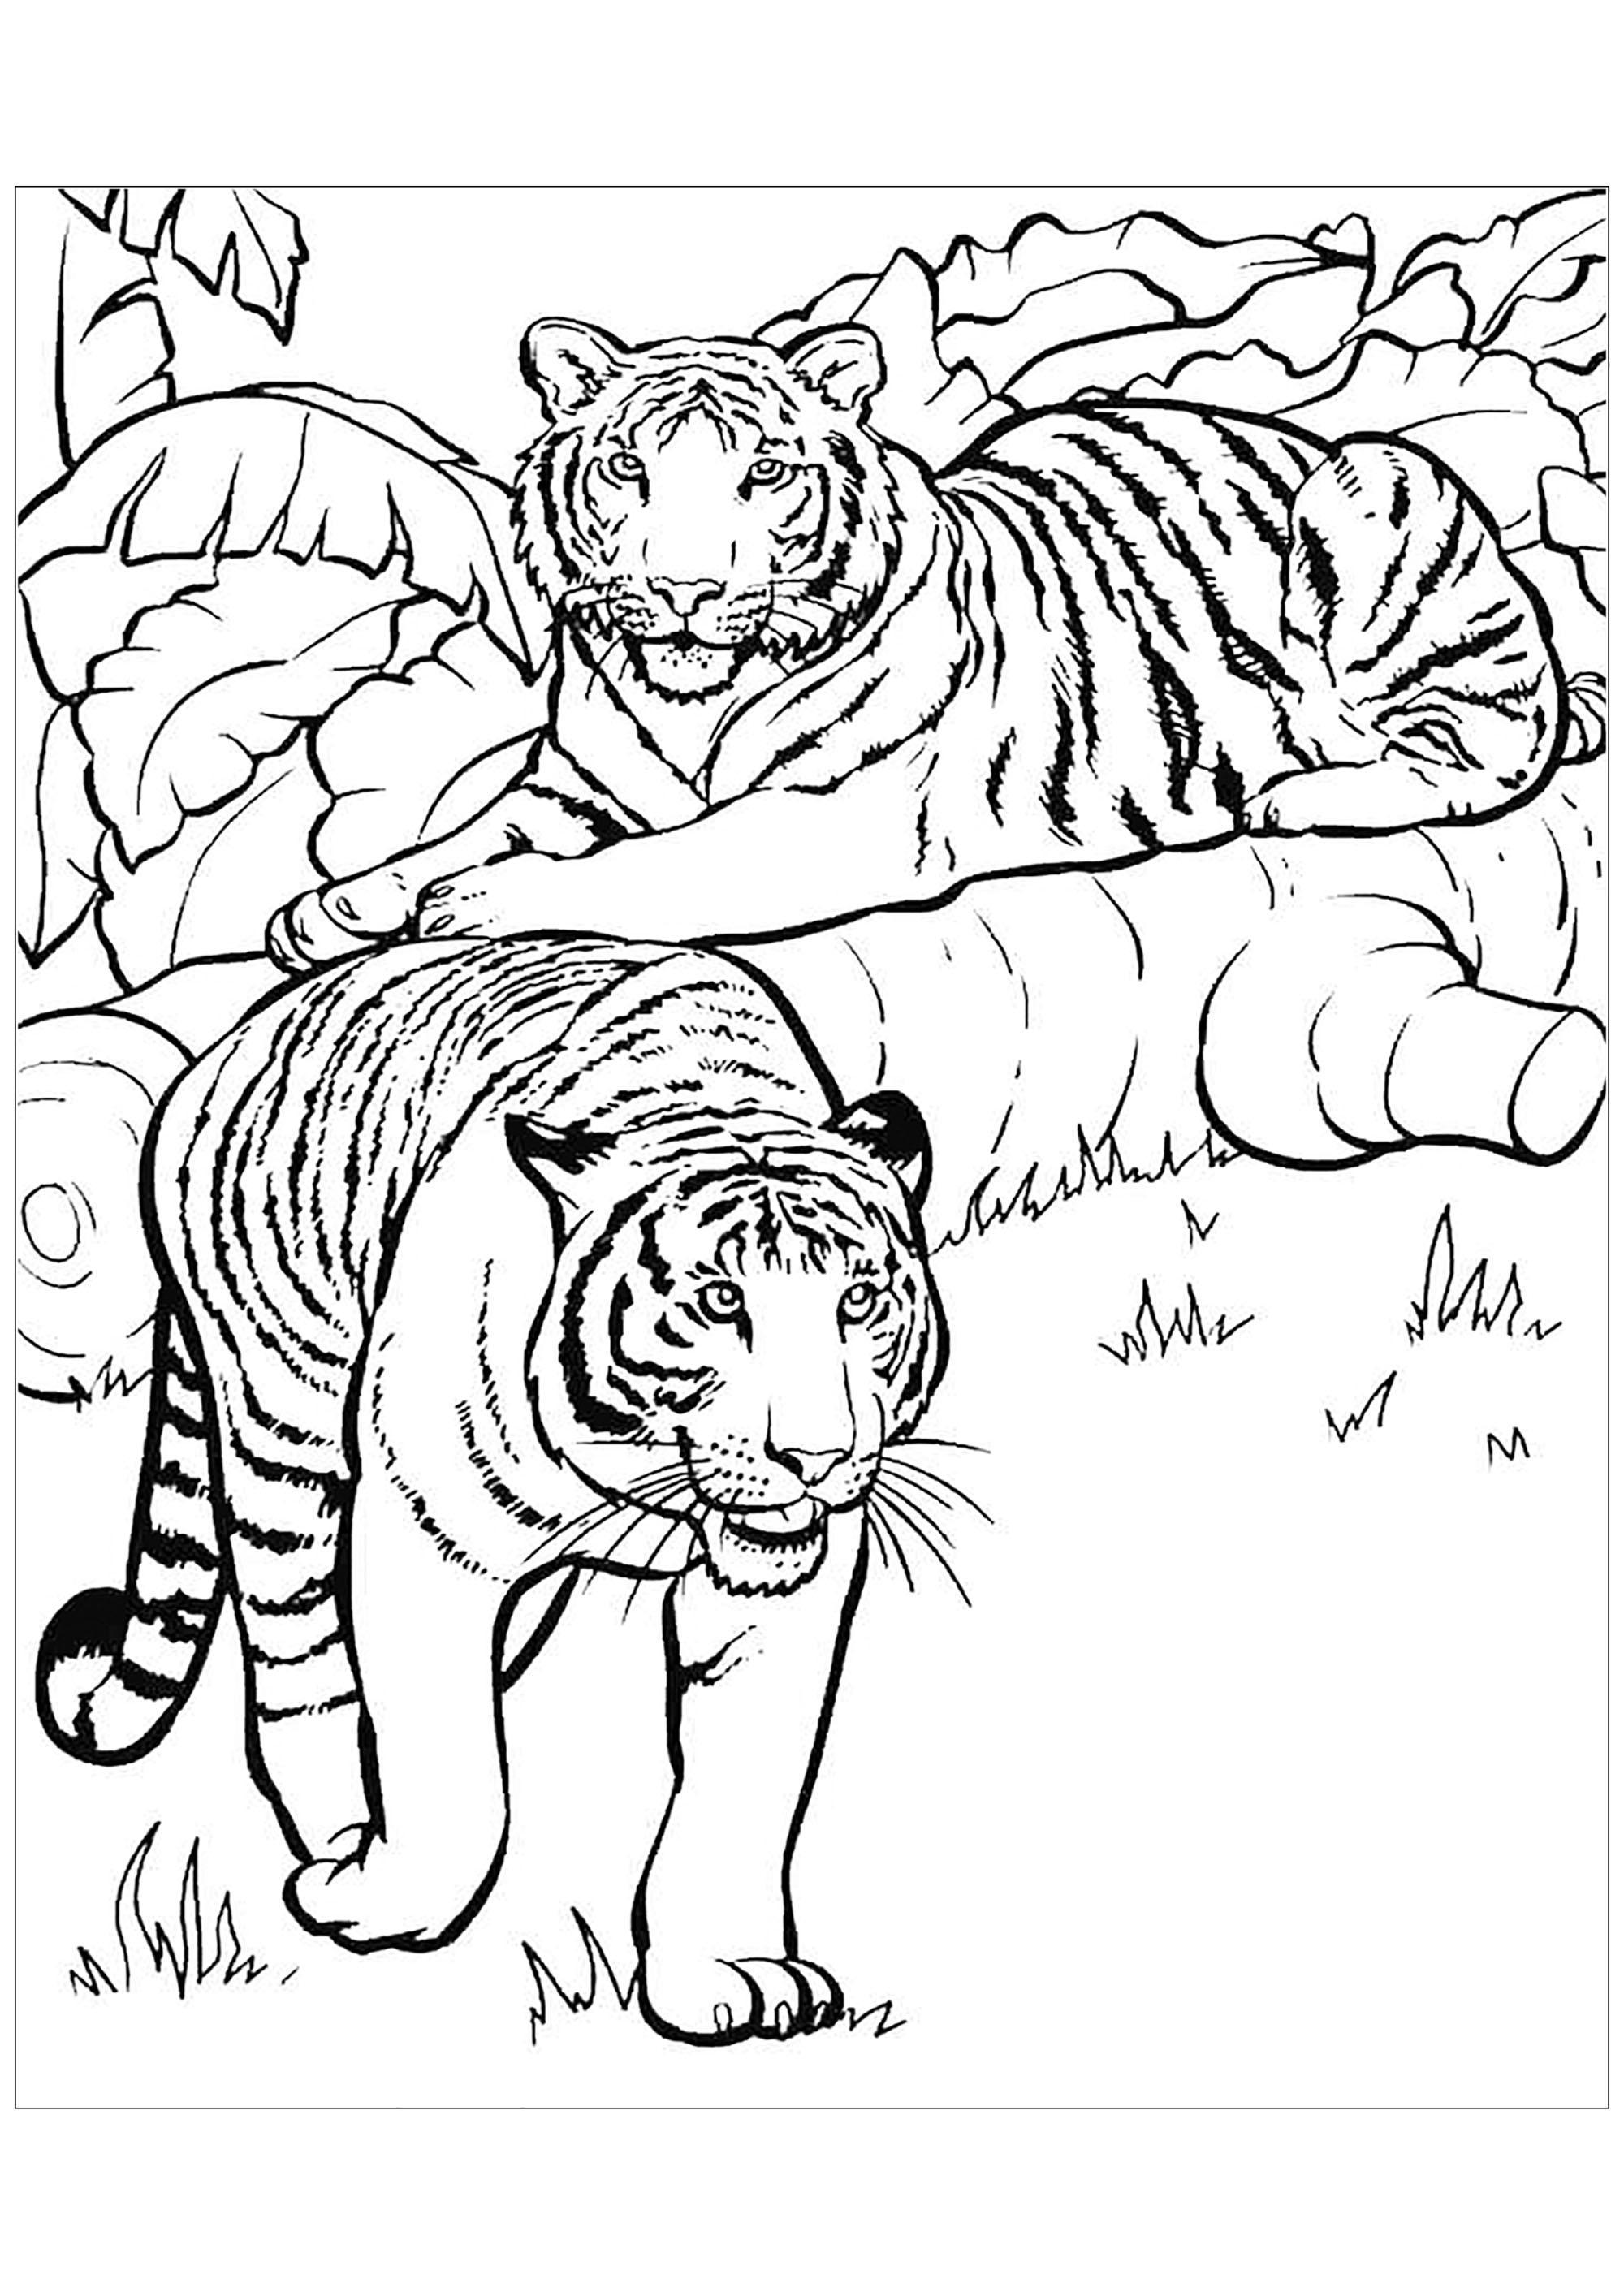 Tranh tô màu hai con hổ rất đẹp